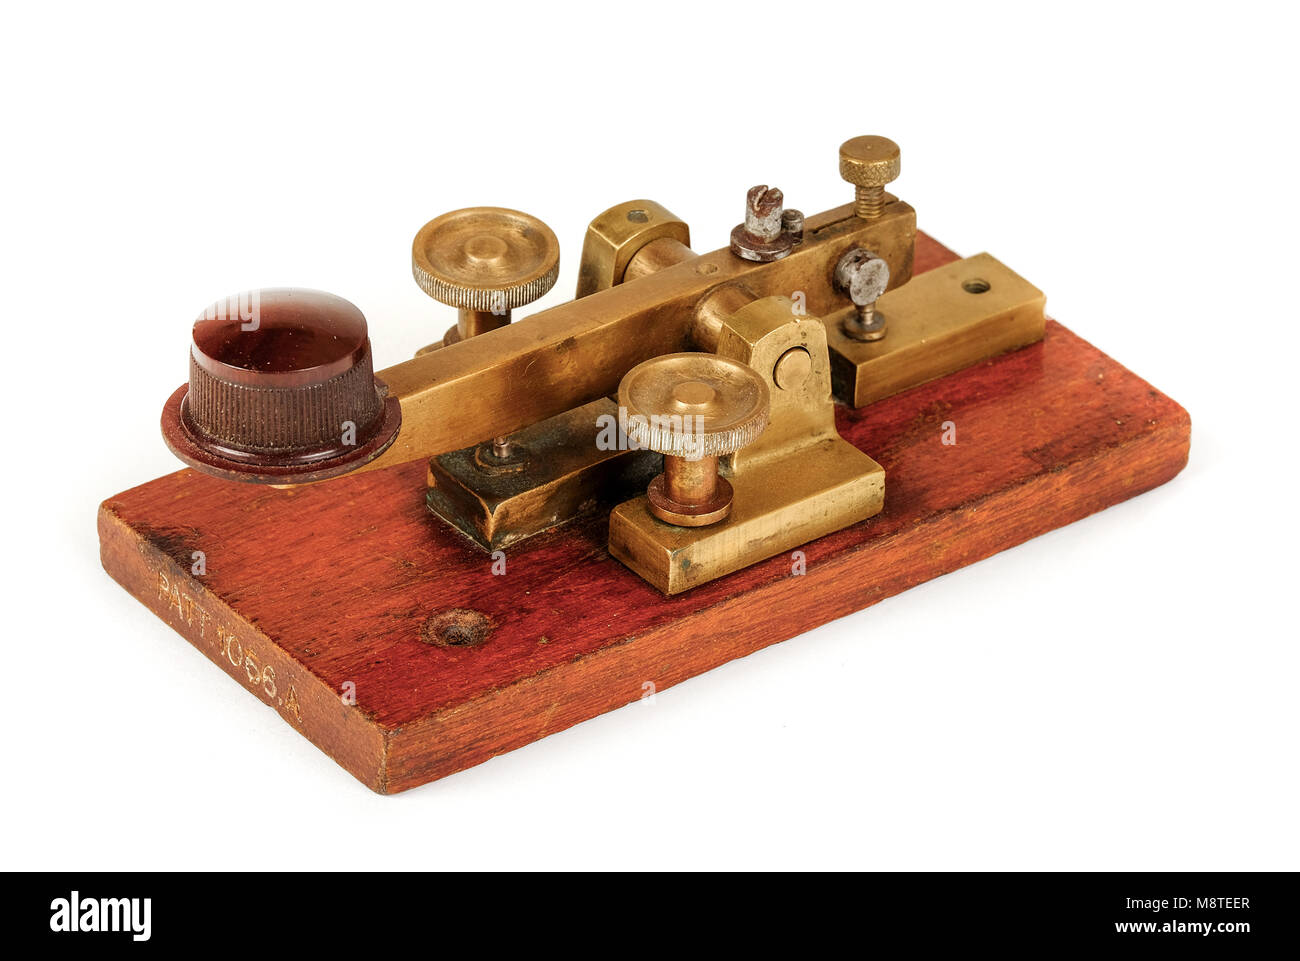 Antique début British Post Office (GPO) telegraph key pour l'envoi de messages en code Morse à l'aide de télégrammes, brevet n° 1056A, faite par WEMCO. Banque D'Images